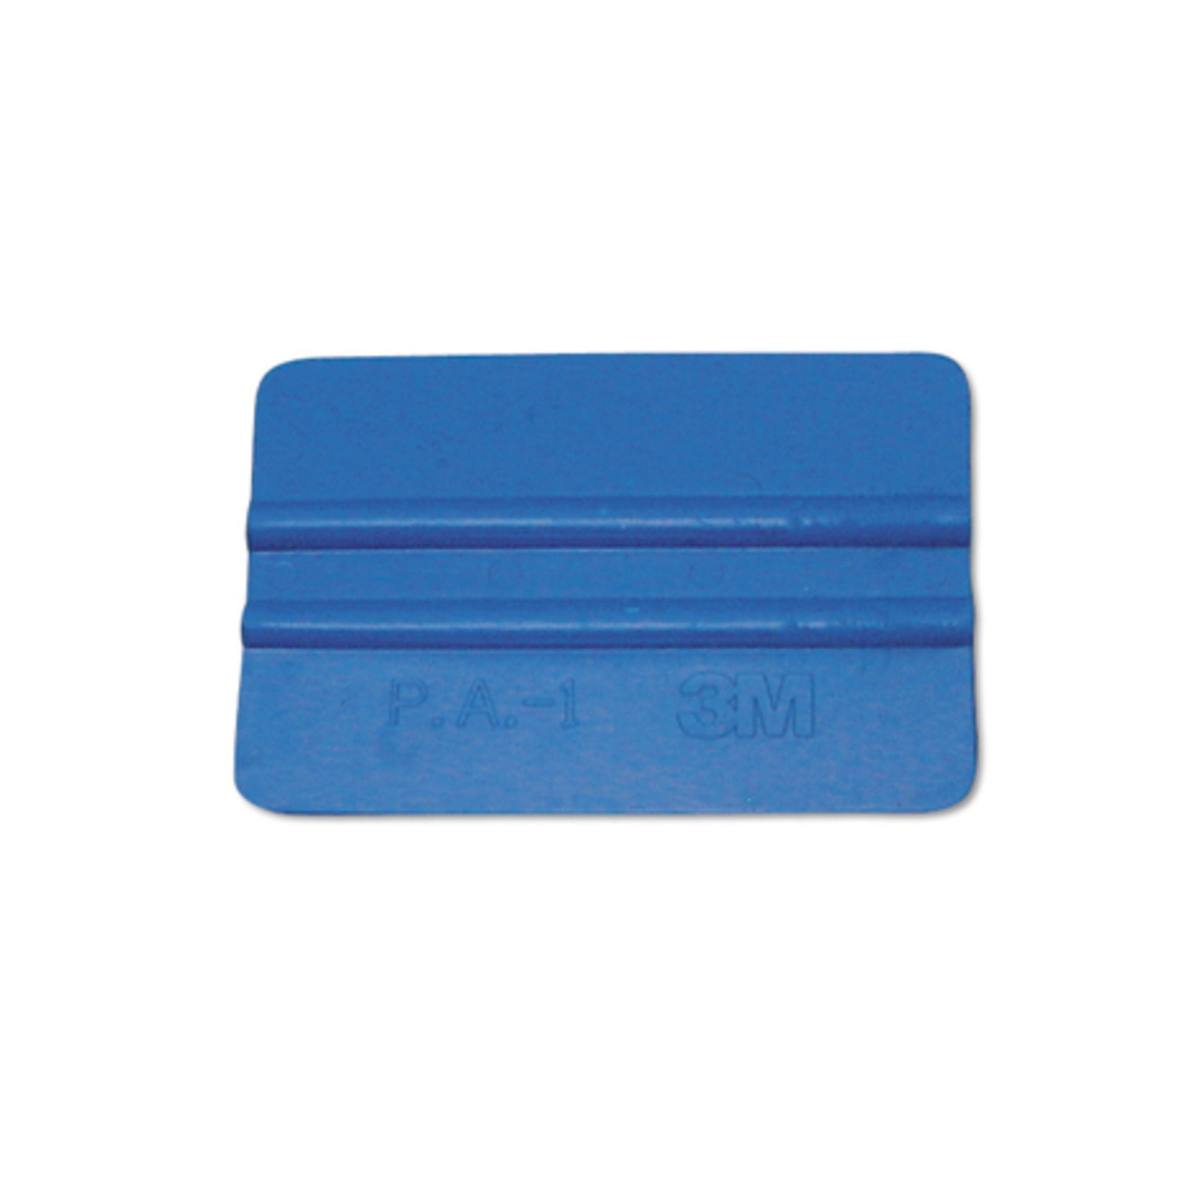 Spatola in plastica 3M, blu chiaro, morbida, 100mmx70mm, P.A.-1